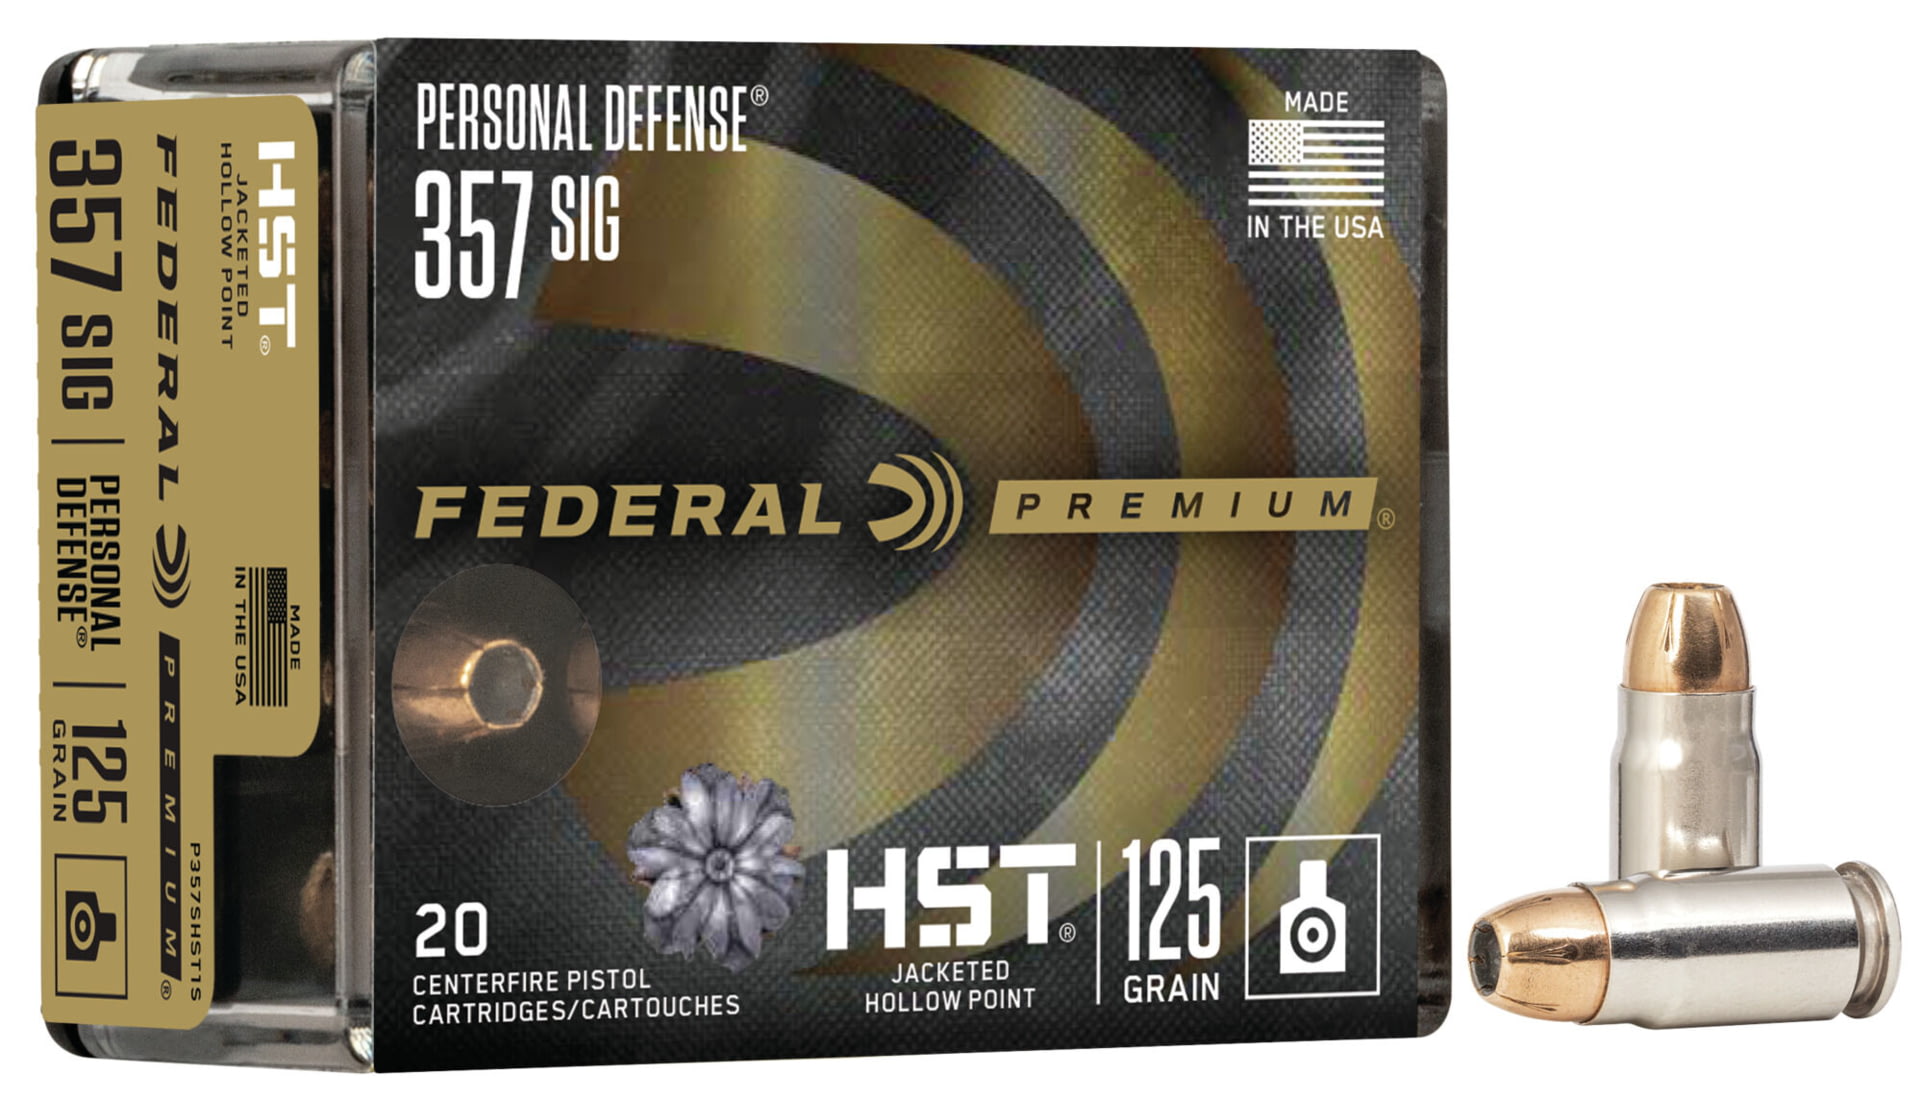 Federal Premium Centerfire Handgun Ammunition .357 SIG 125 grain HST Jacketed Hollow Point Centerfire Pistol Ammunition